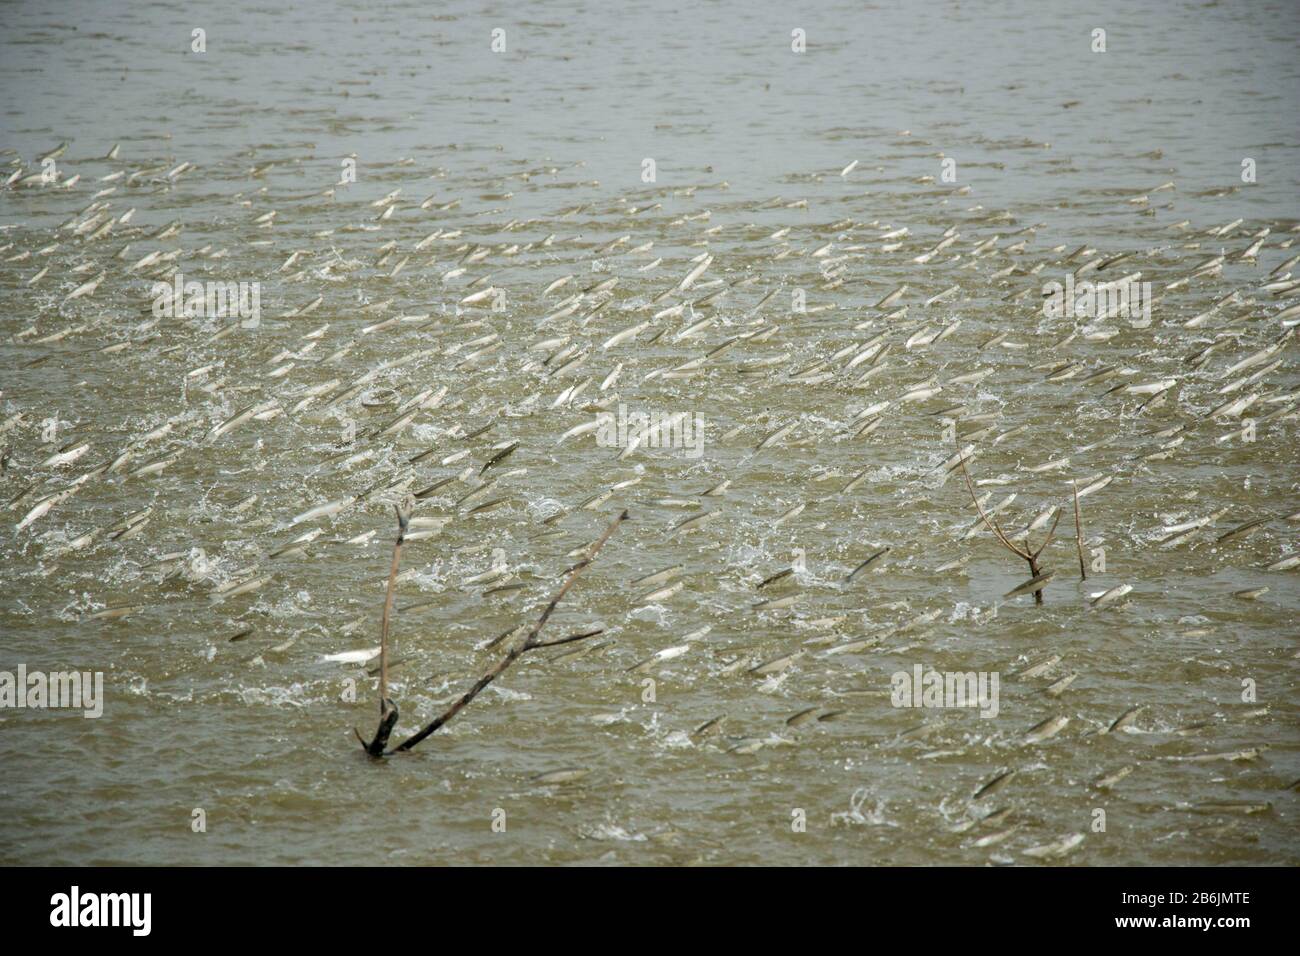 Eine Gruppe von Mulletfischen springt aus einem Teich aus dem Wasser. Die Fische spielen eine sehr wichtige Rolle, um den Teich zu belüften und Wasser mit Sauerstoff anzureichern. Stockfoto